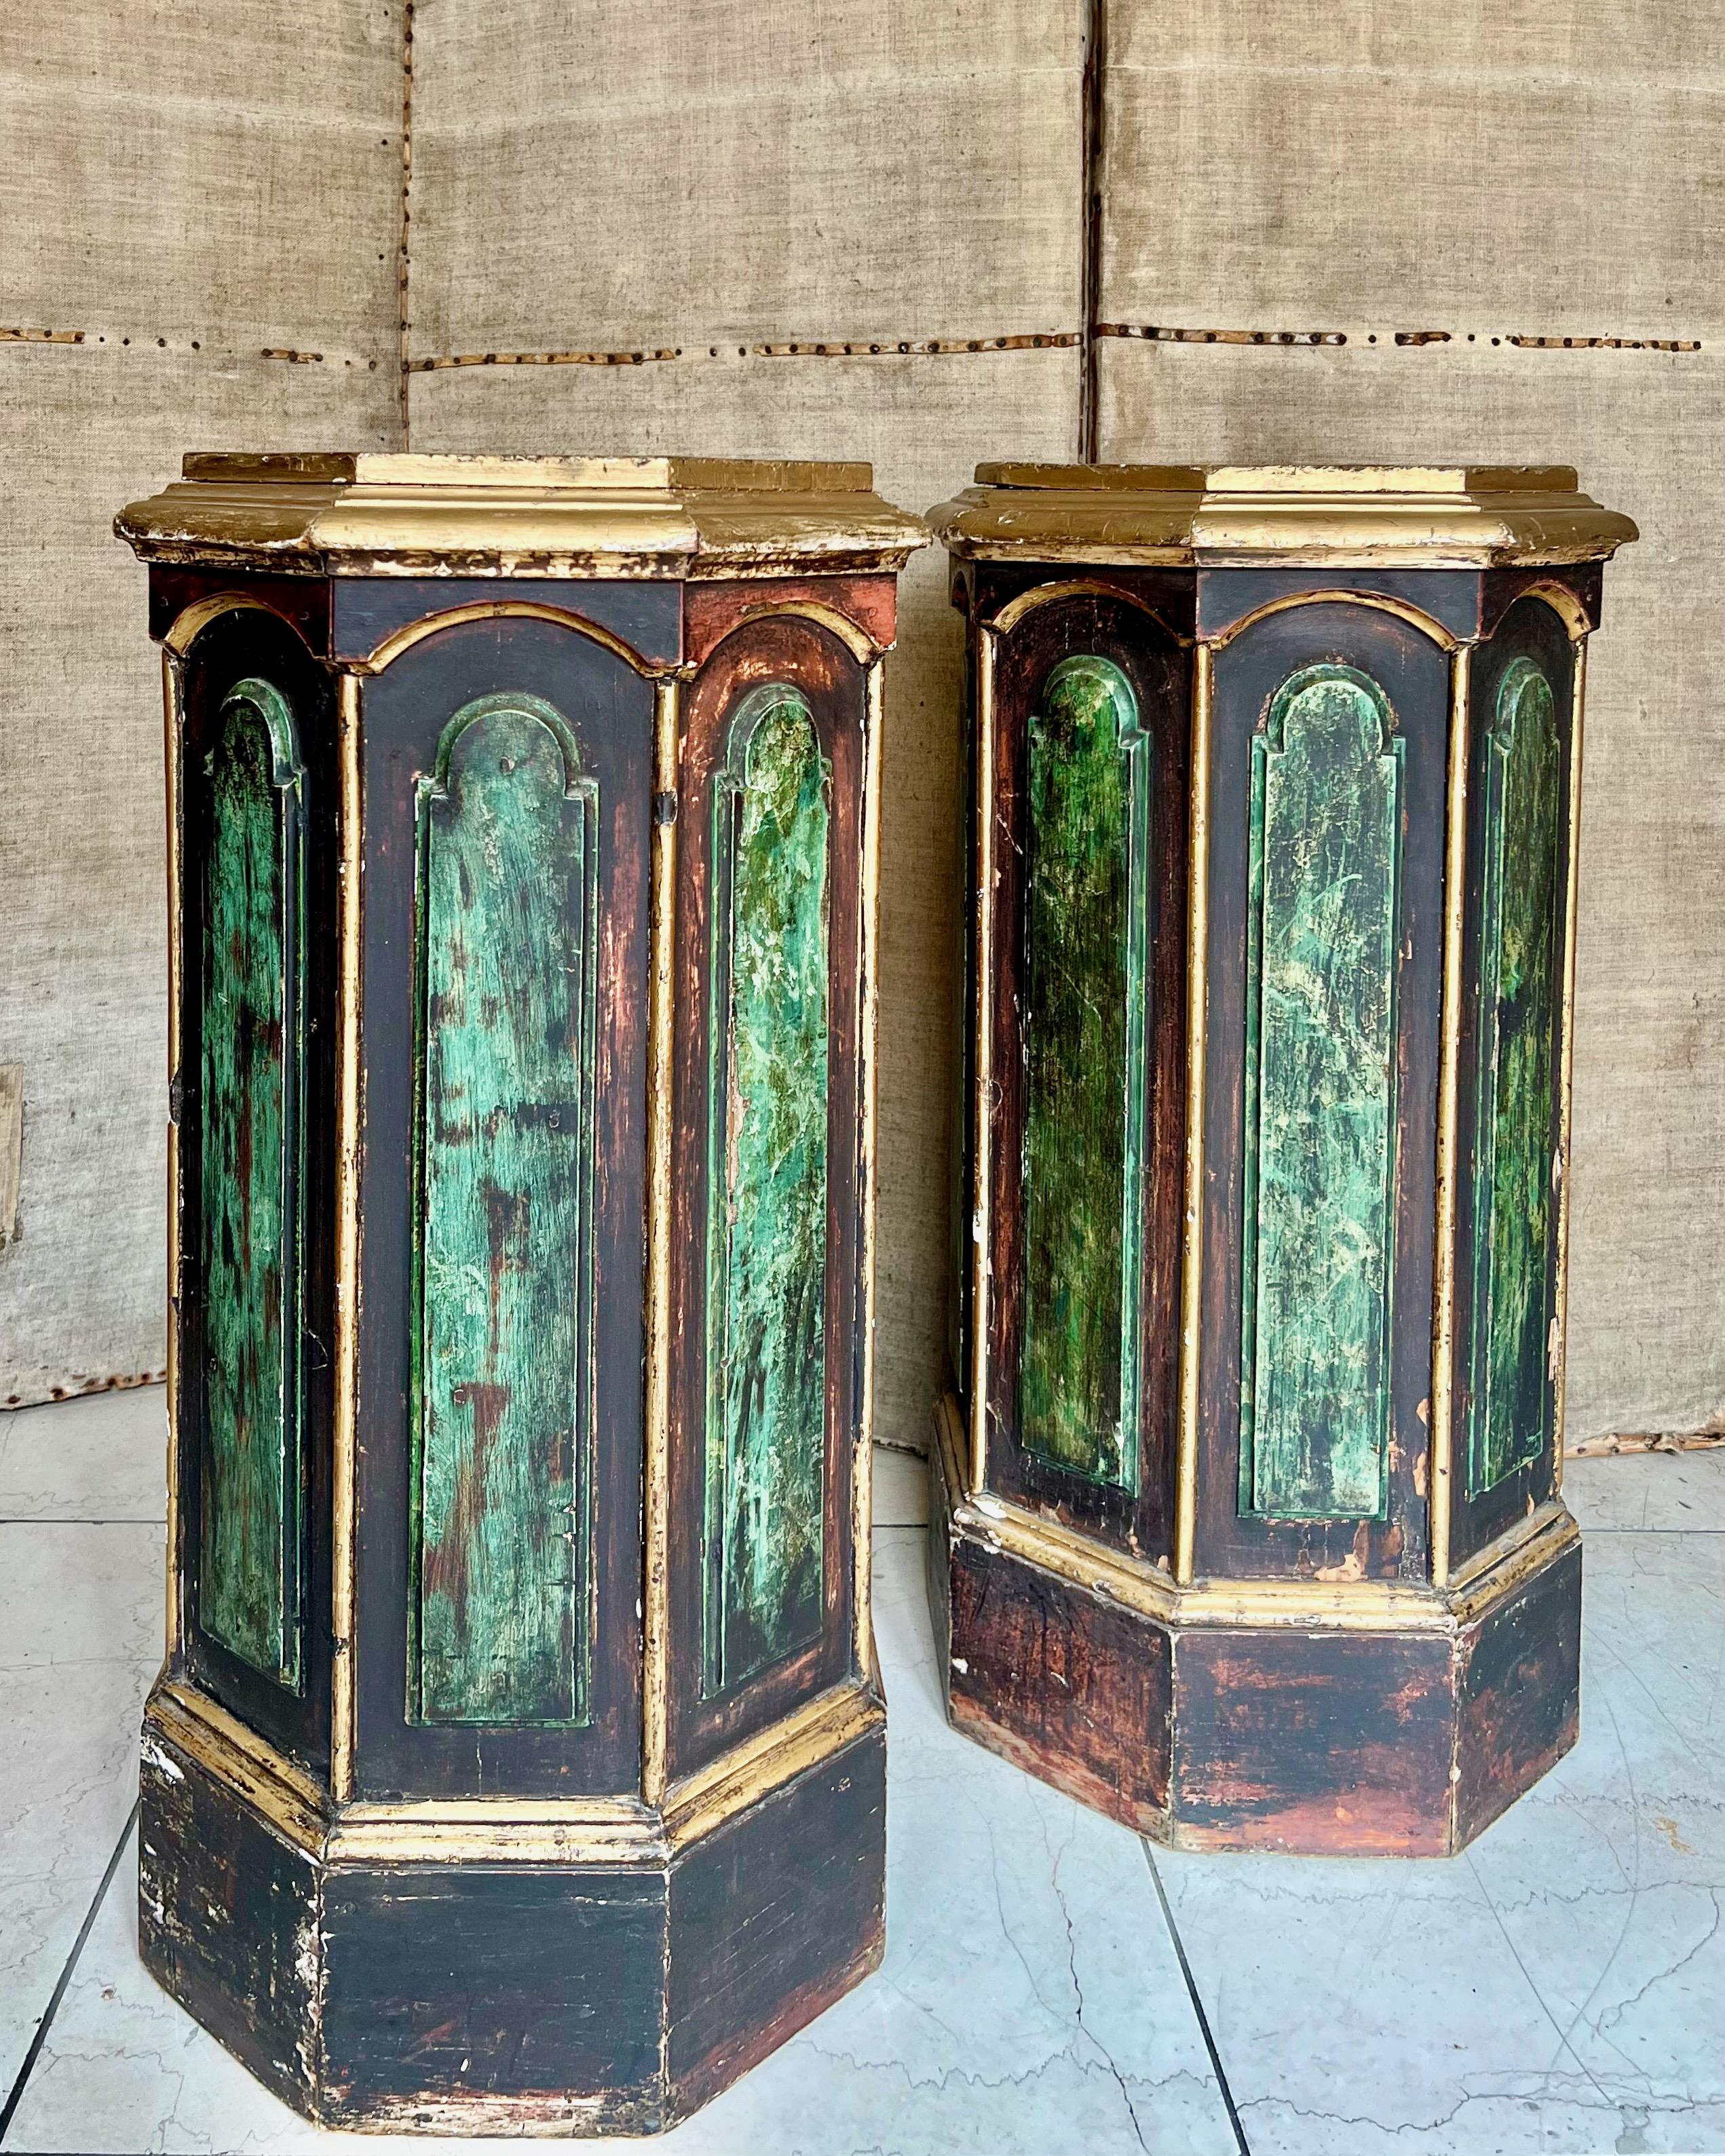 Paar Büstenständer/Podeste/Säulen aus dem 19. Jahrhundert - bemalt, dekorativ getäfelt mit geformten Oberteilen und Seiten in Achteckform. Bemalt in dekorativem Marmor-Trompe L'Oeil-Effekt mit Goldverzierung.
Seltener Fund - eine tolle Größe für